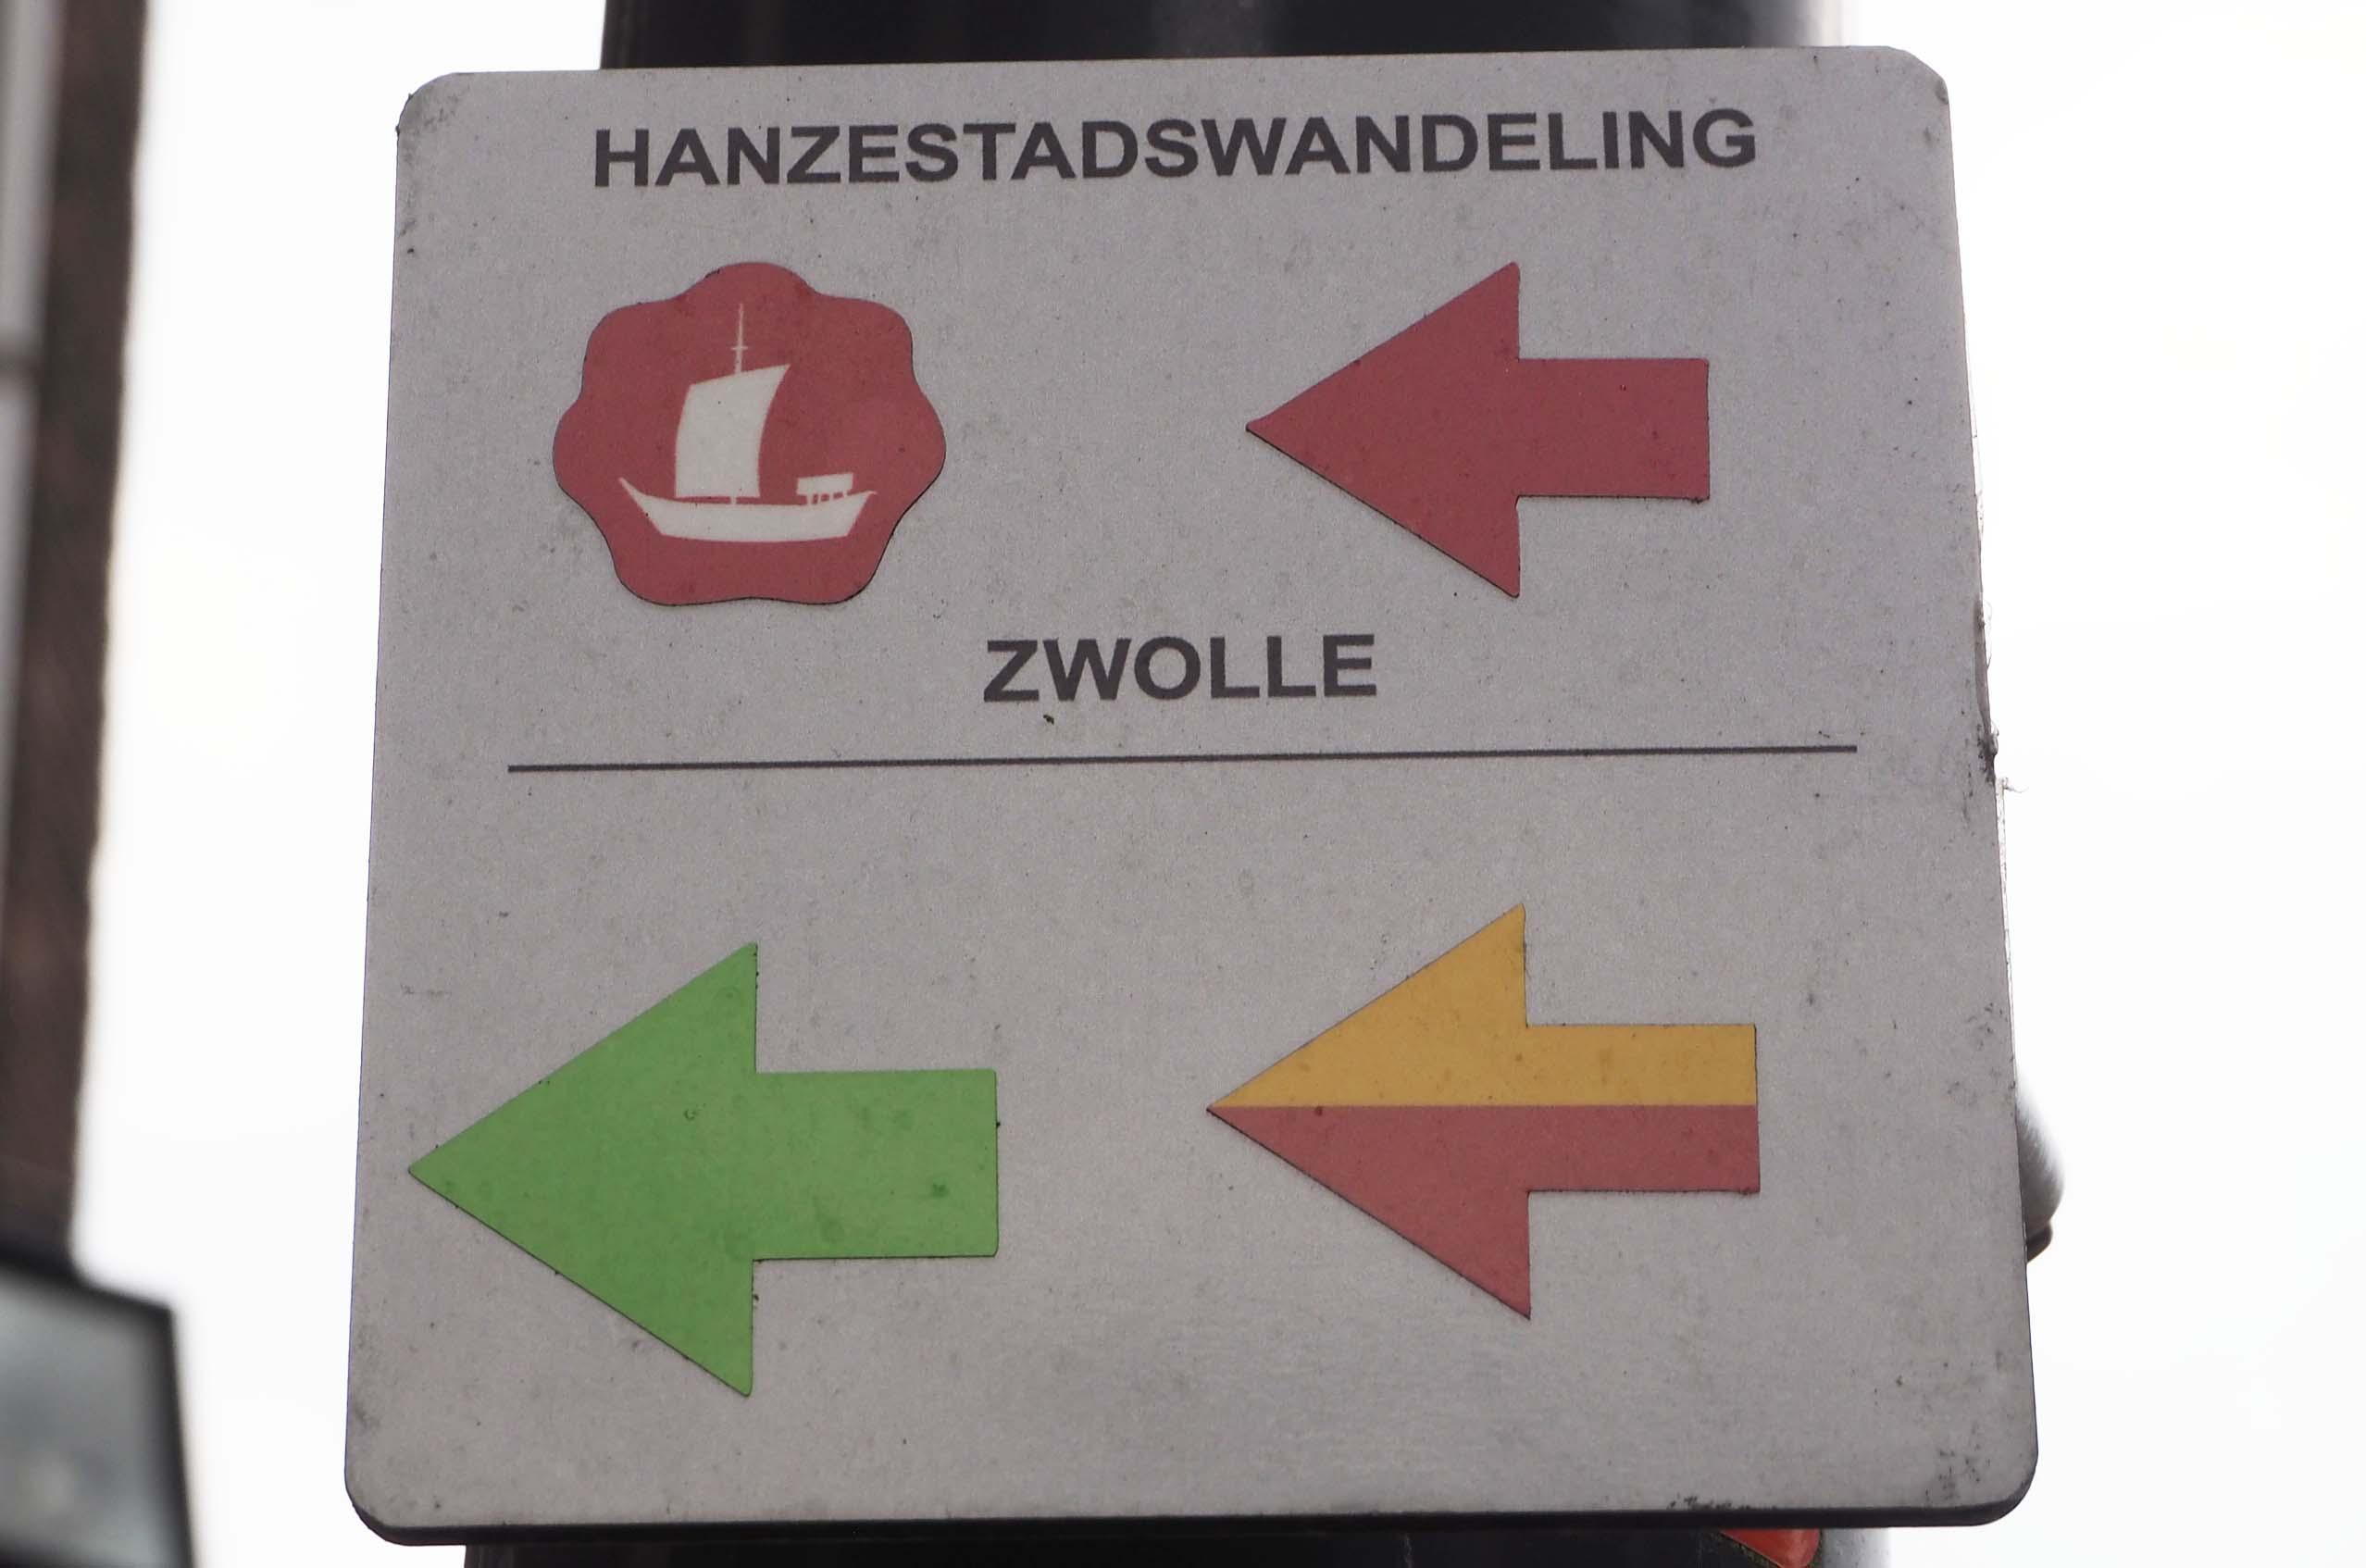 Hanze stadswandeling in Zwolle